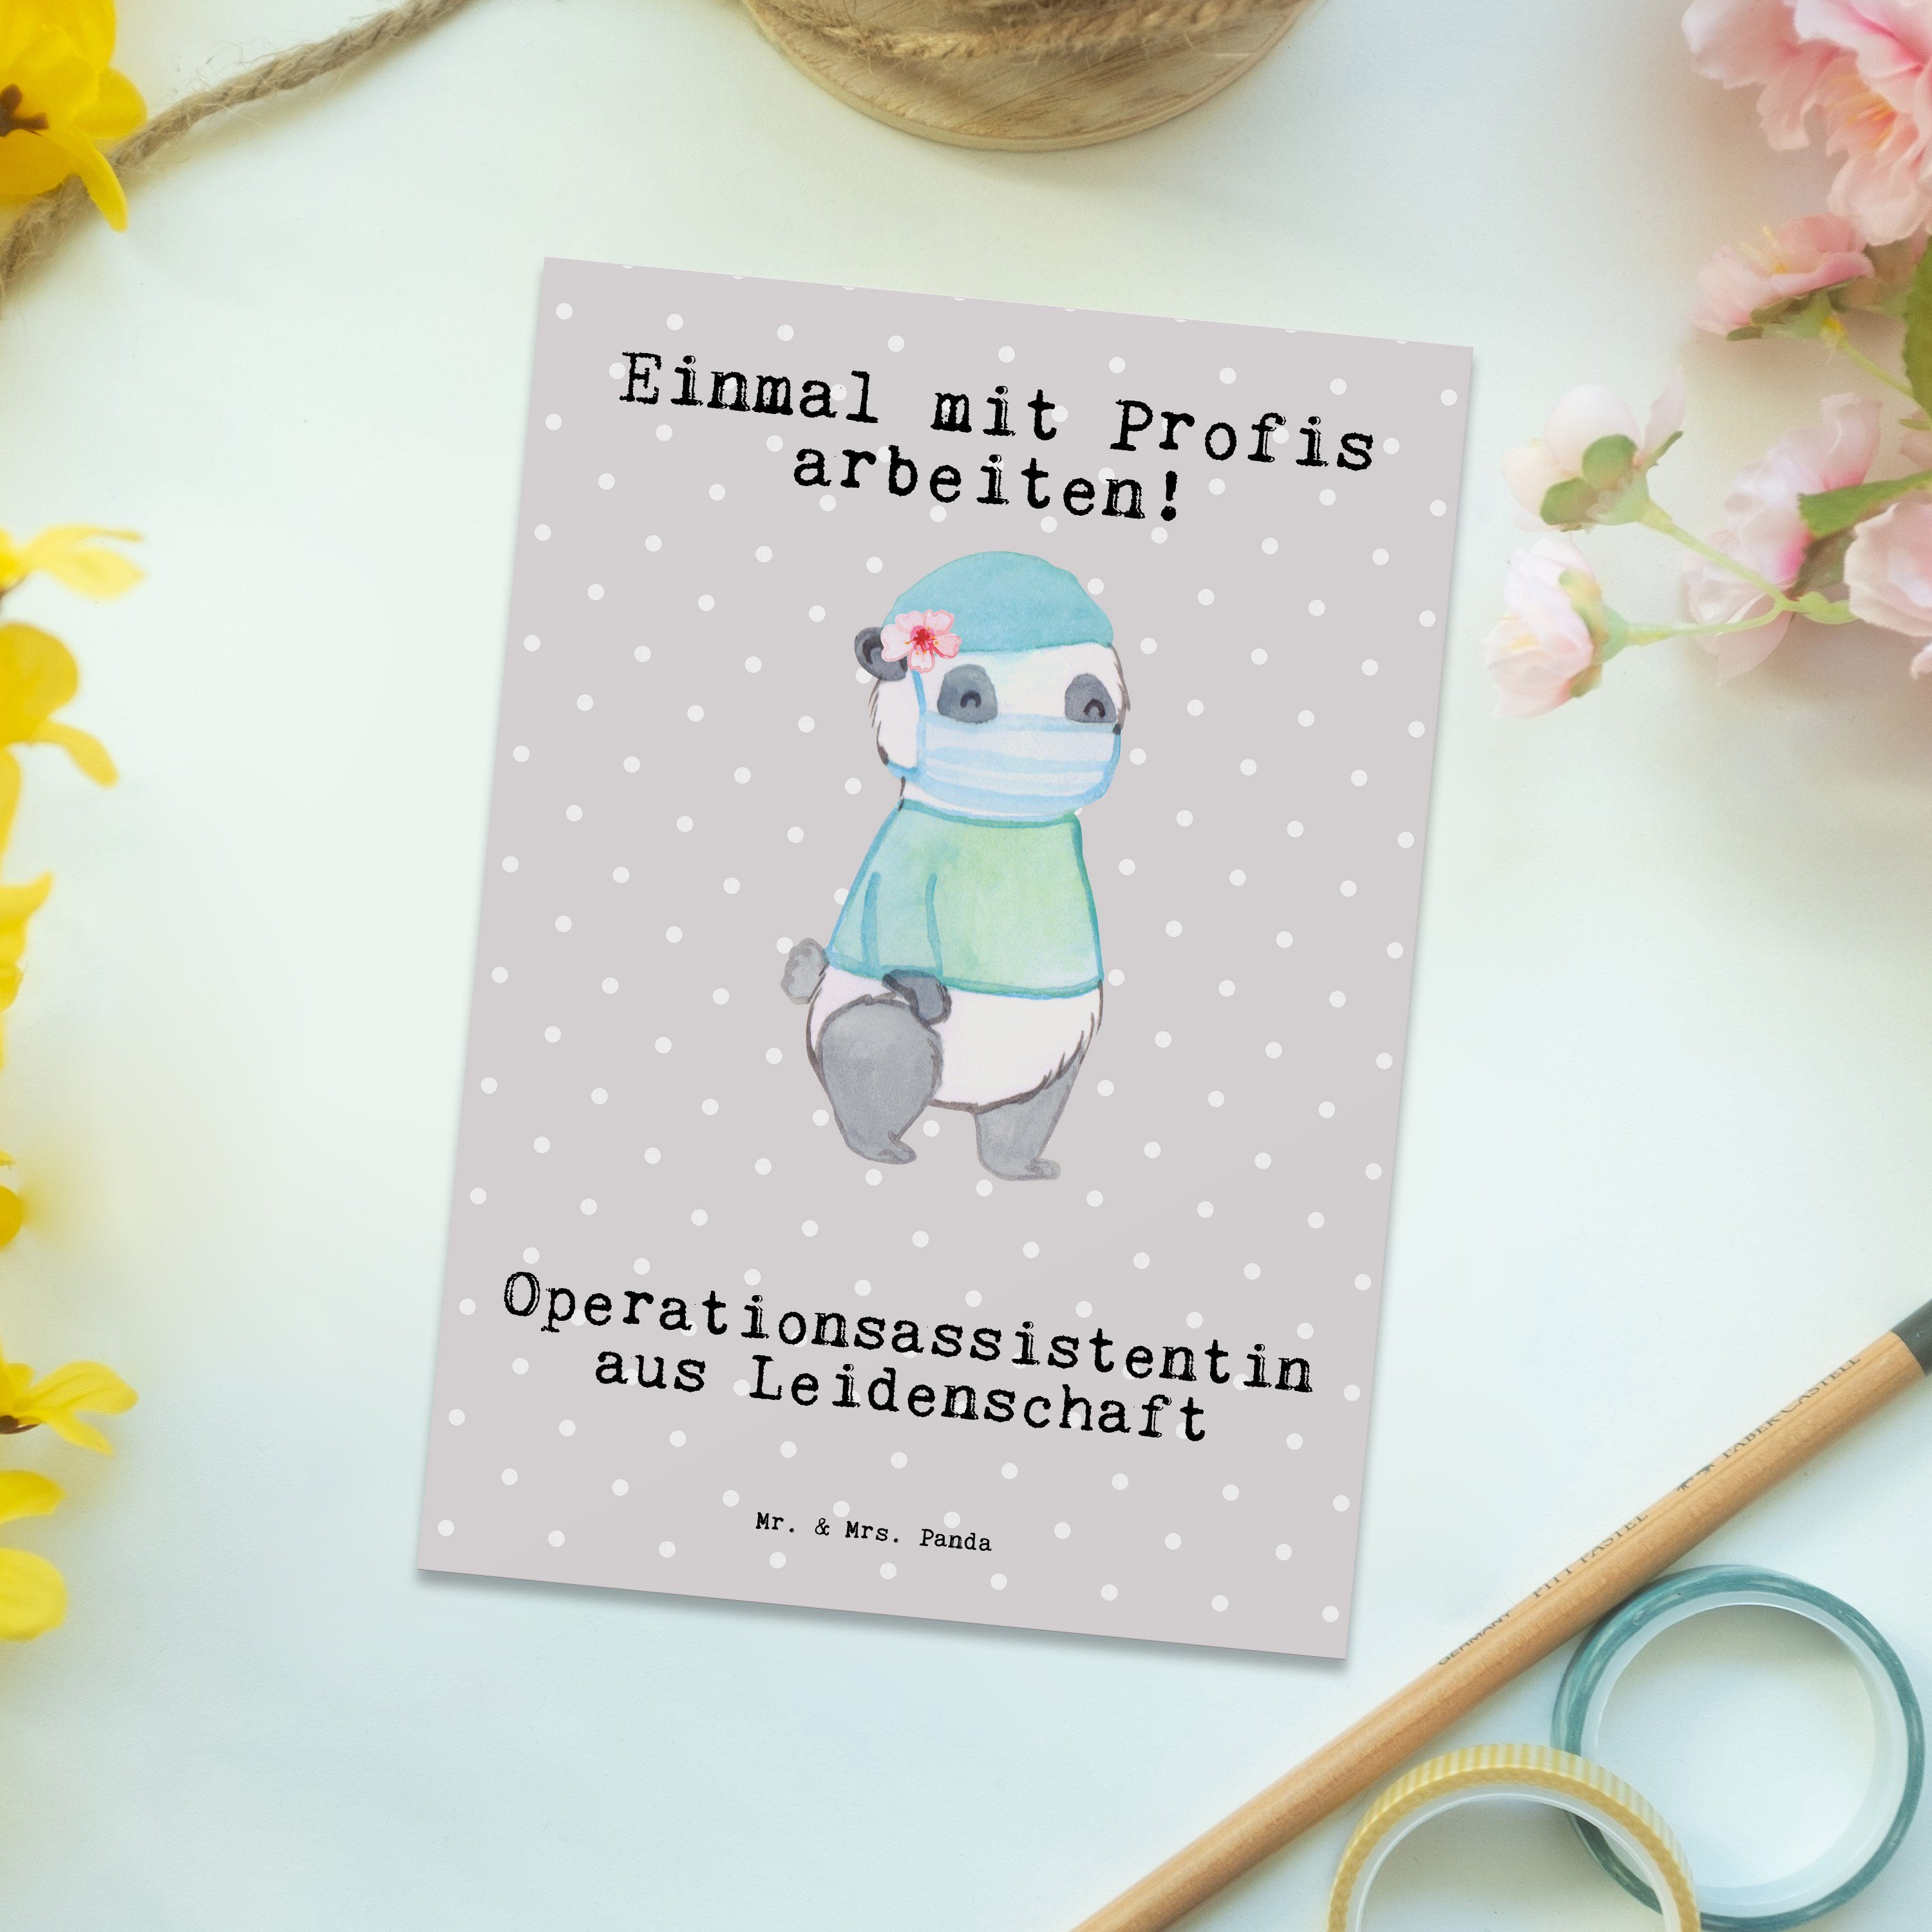 Mr. & Mrs. Panda Postkarte Fir Grau Pastell - Operationsassistentin Leidenschaft - Geschenk, aus